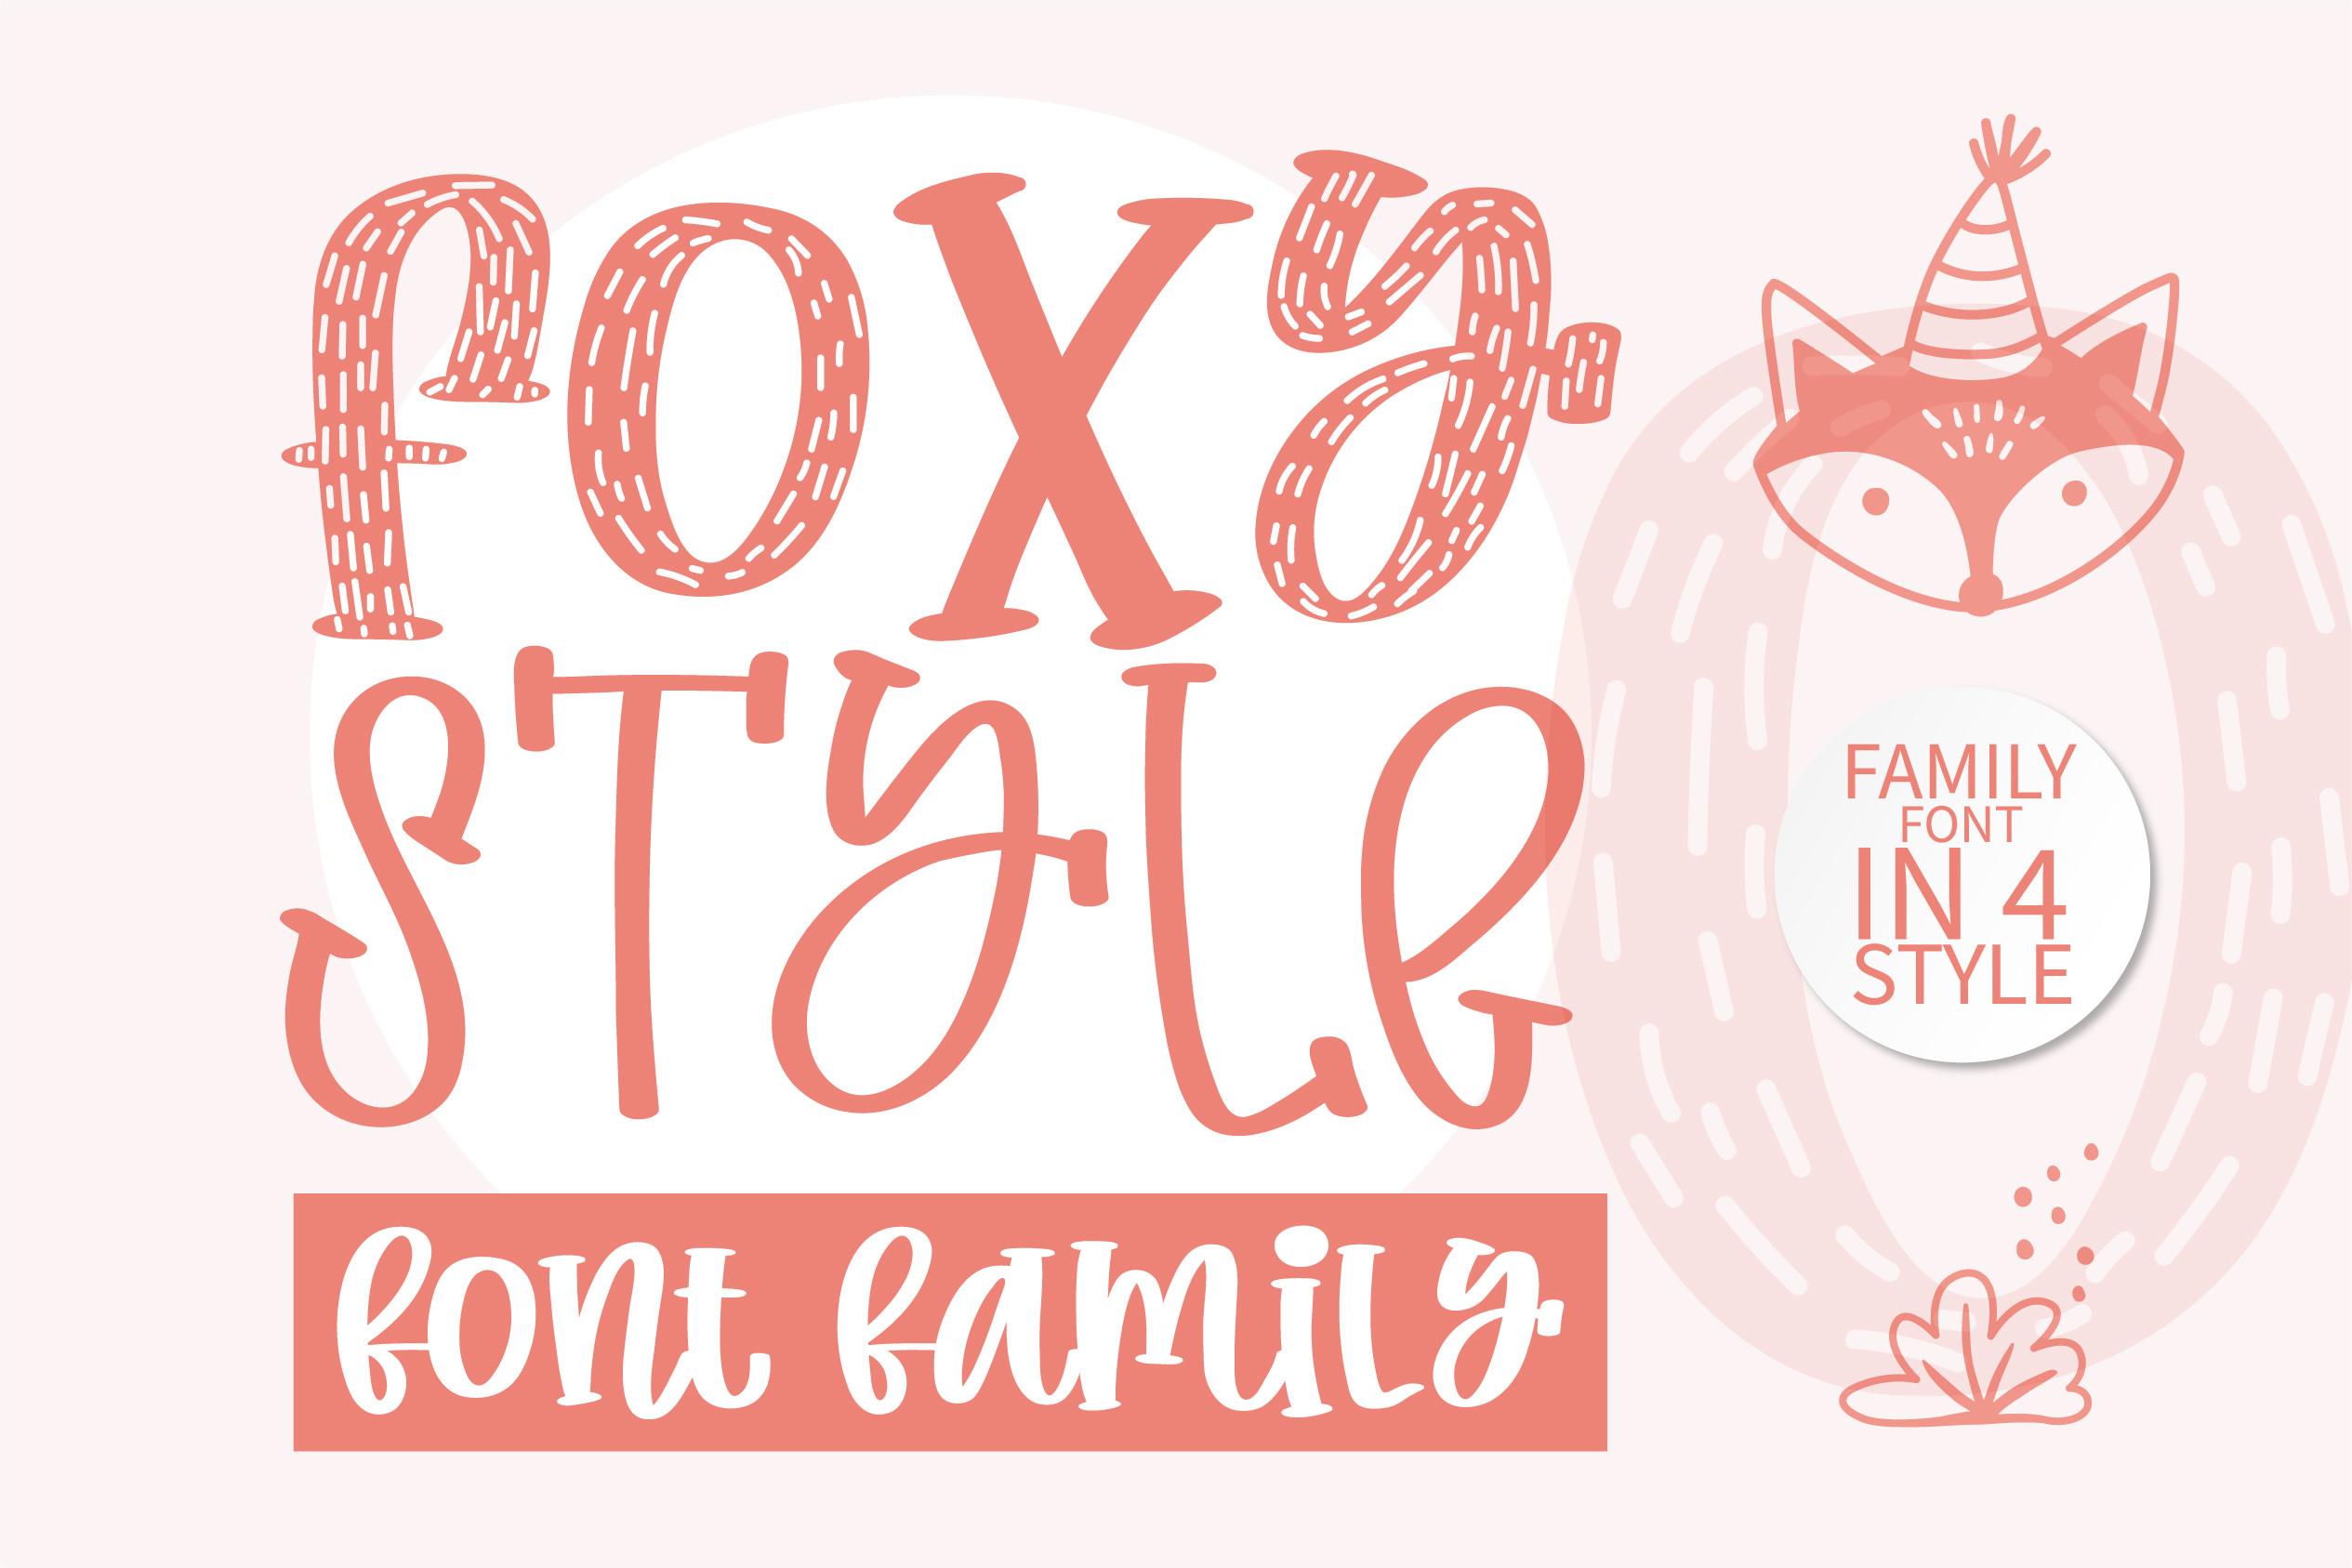 Foxy Style Font